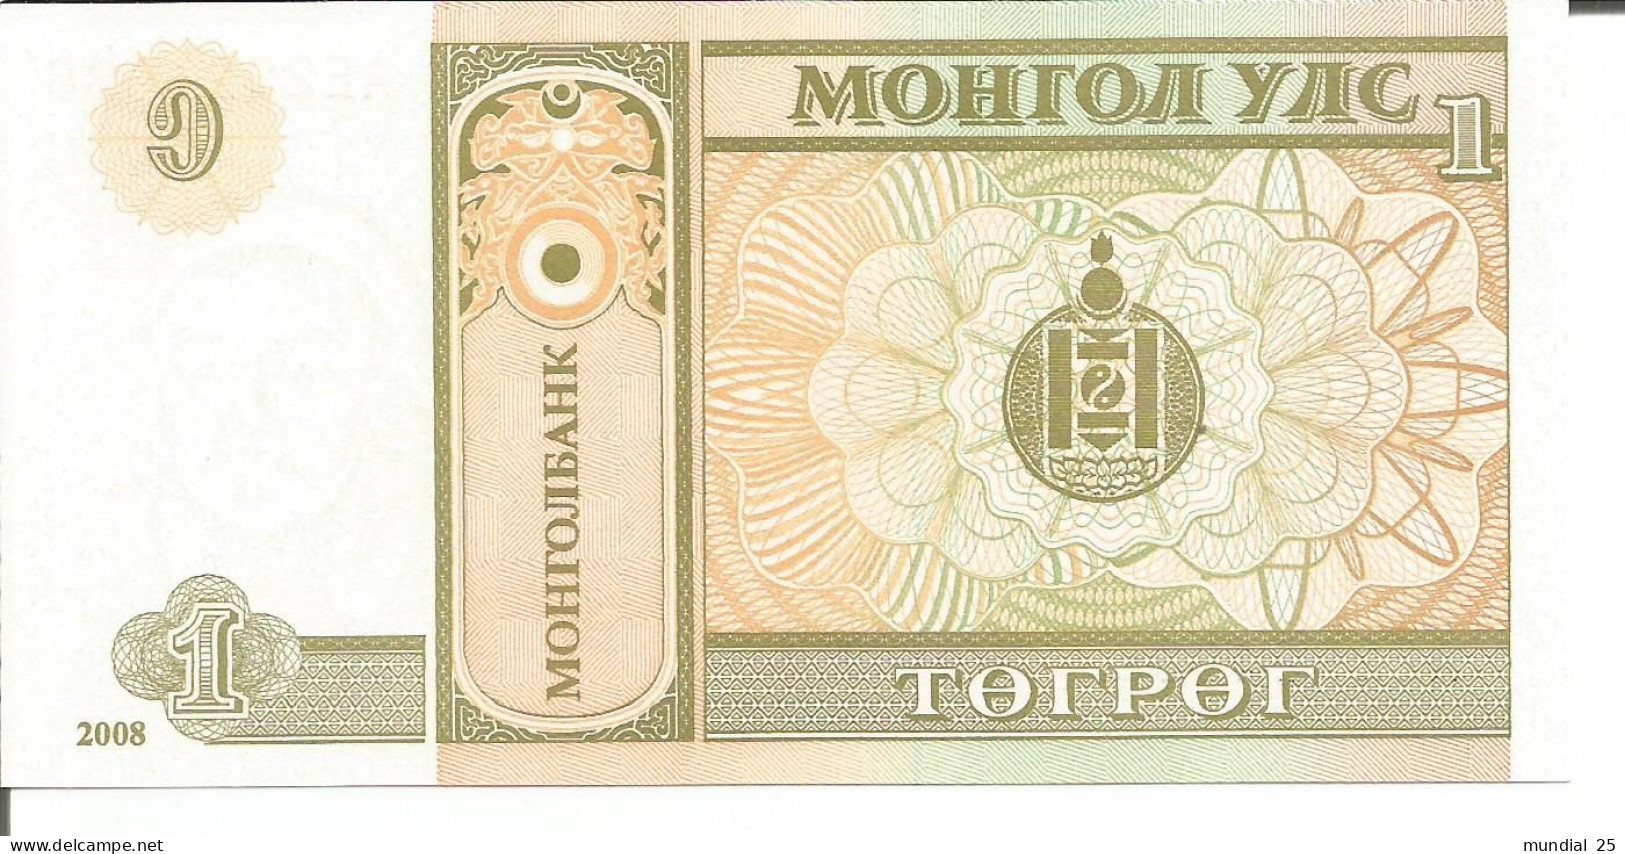 MONGOLIA 1 TUGRIK 2008 - Mongolei